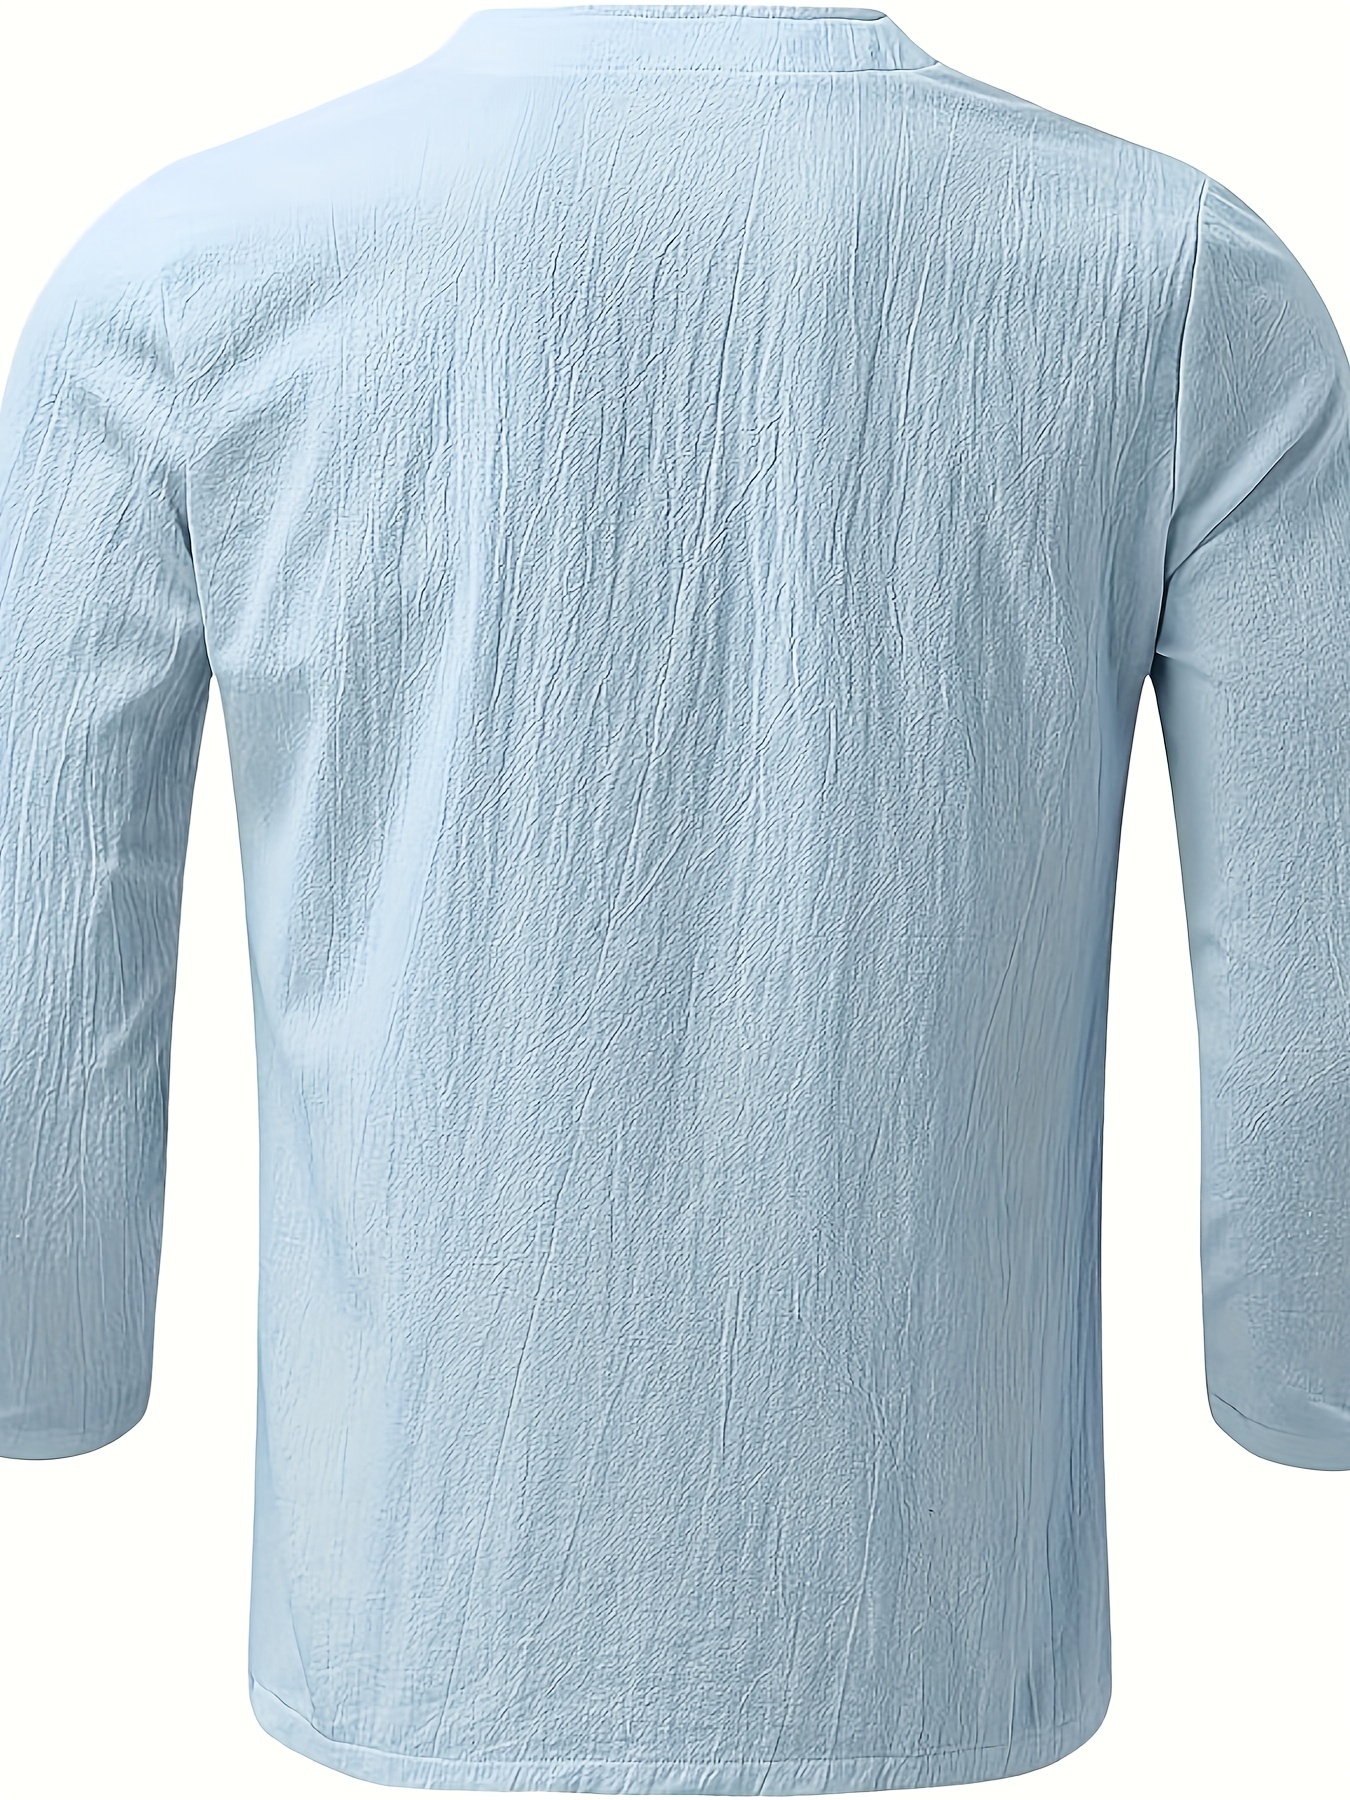  Men's Summer T-Shirt 100% Cotton Hippie Shirt V-Neck